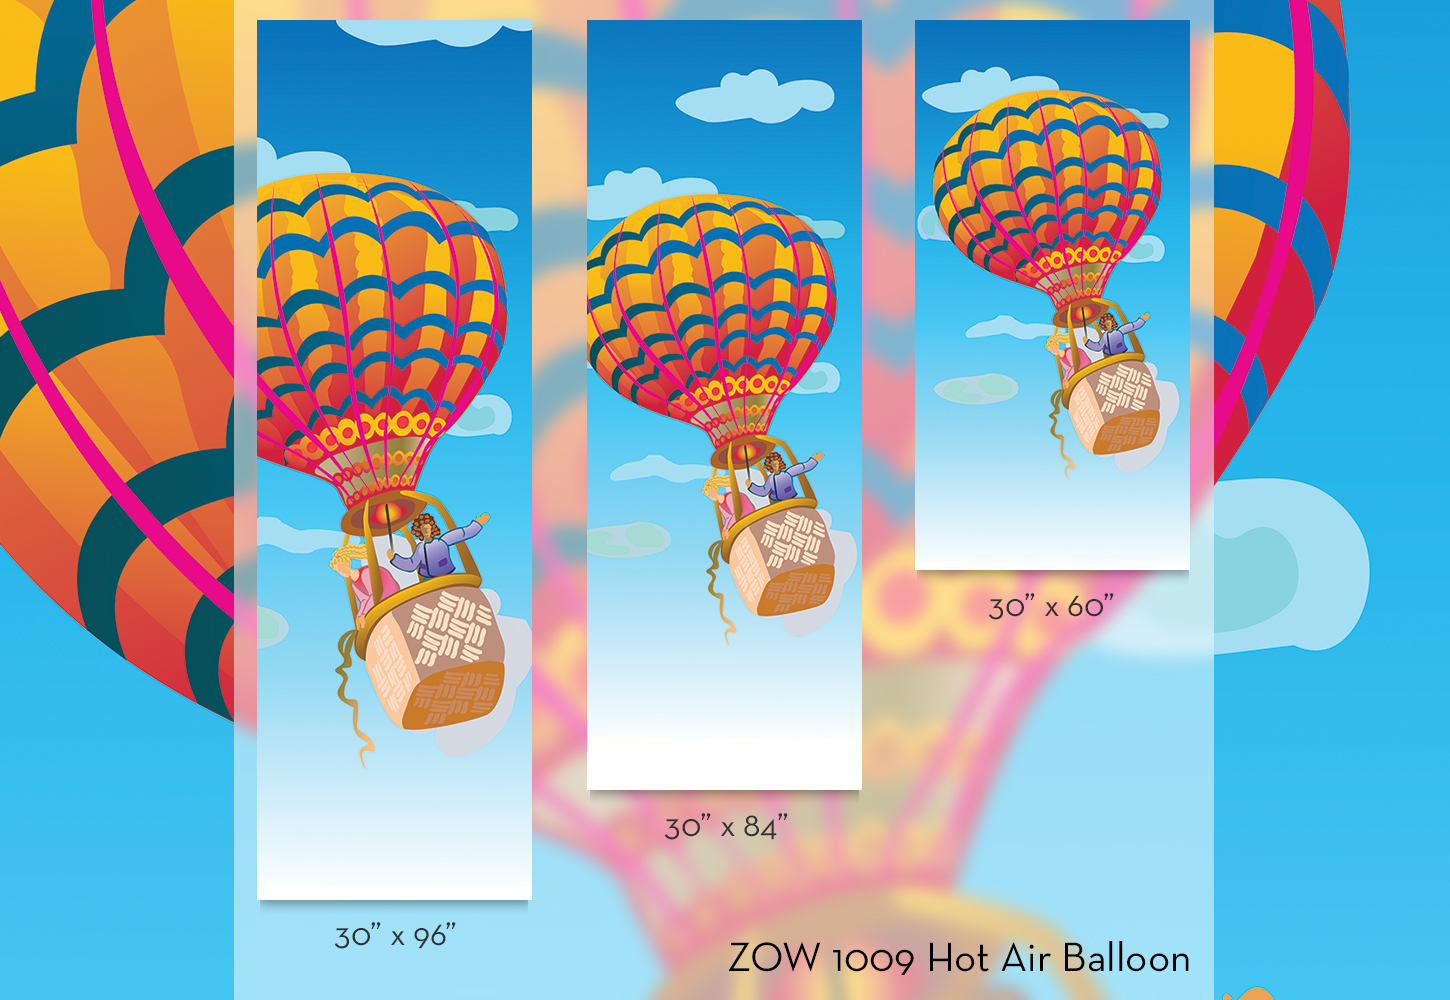 ZOW 1009 Hot Air Balloon